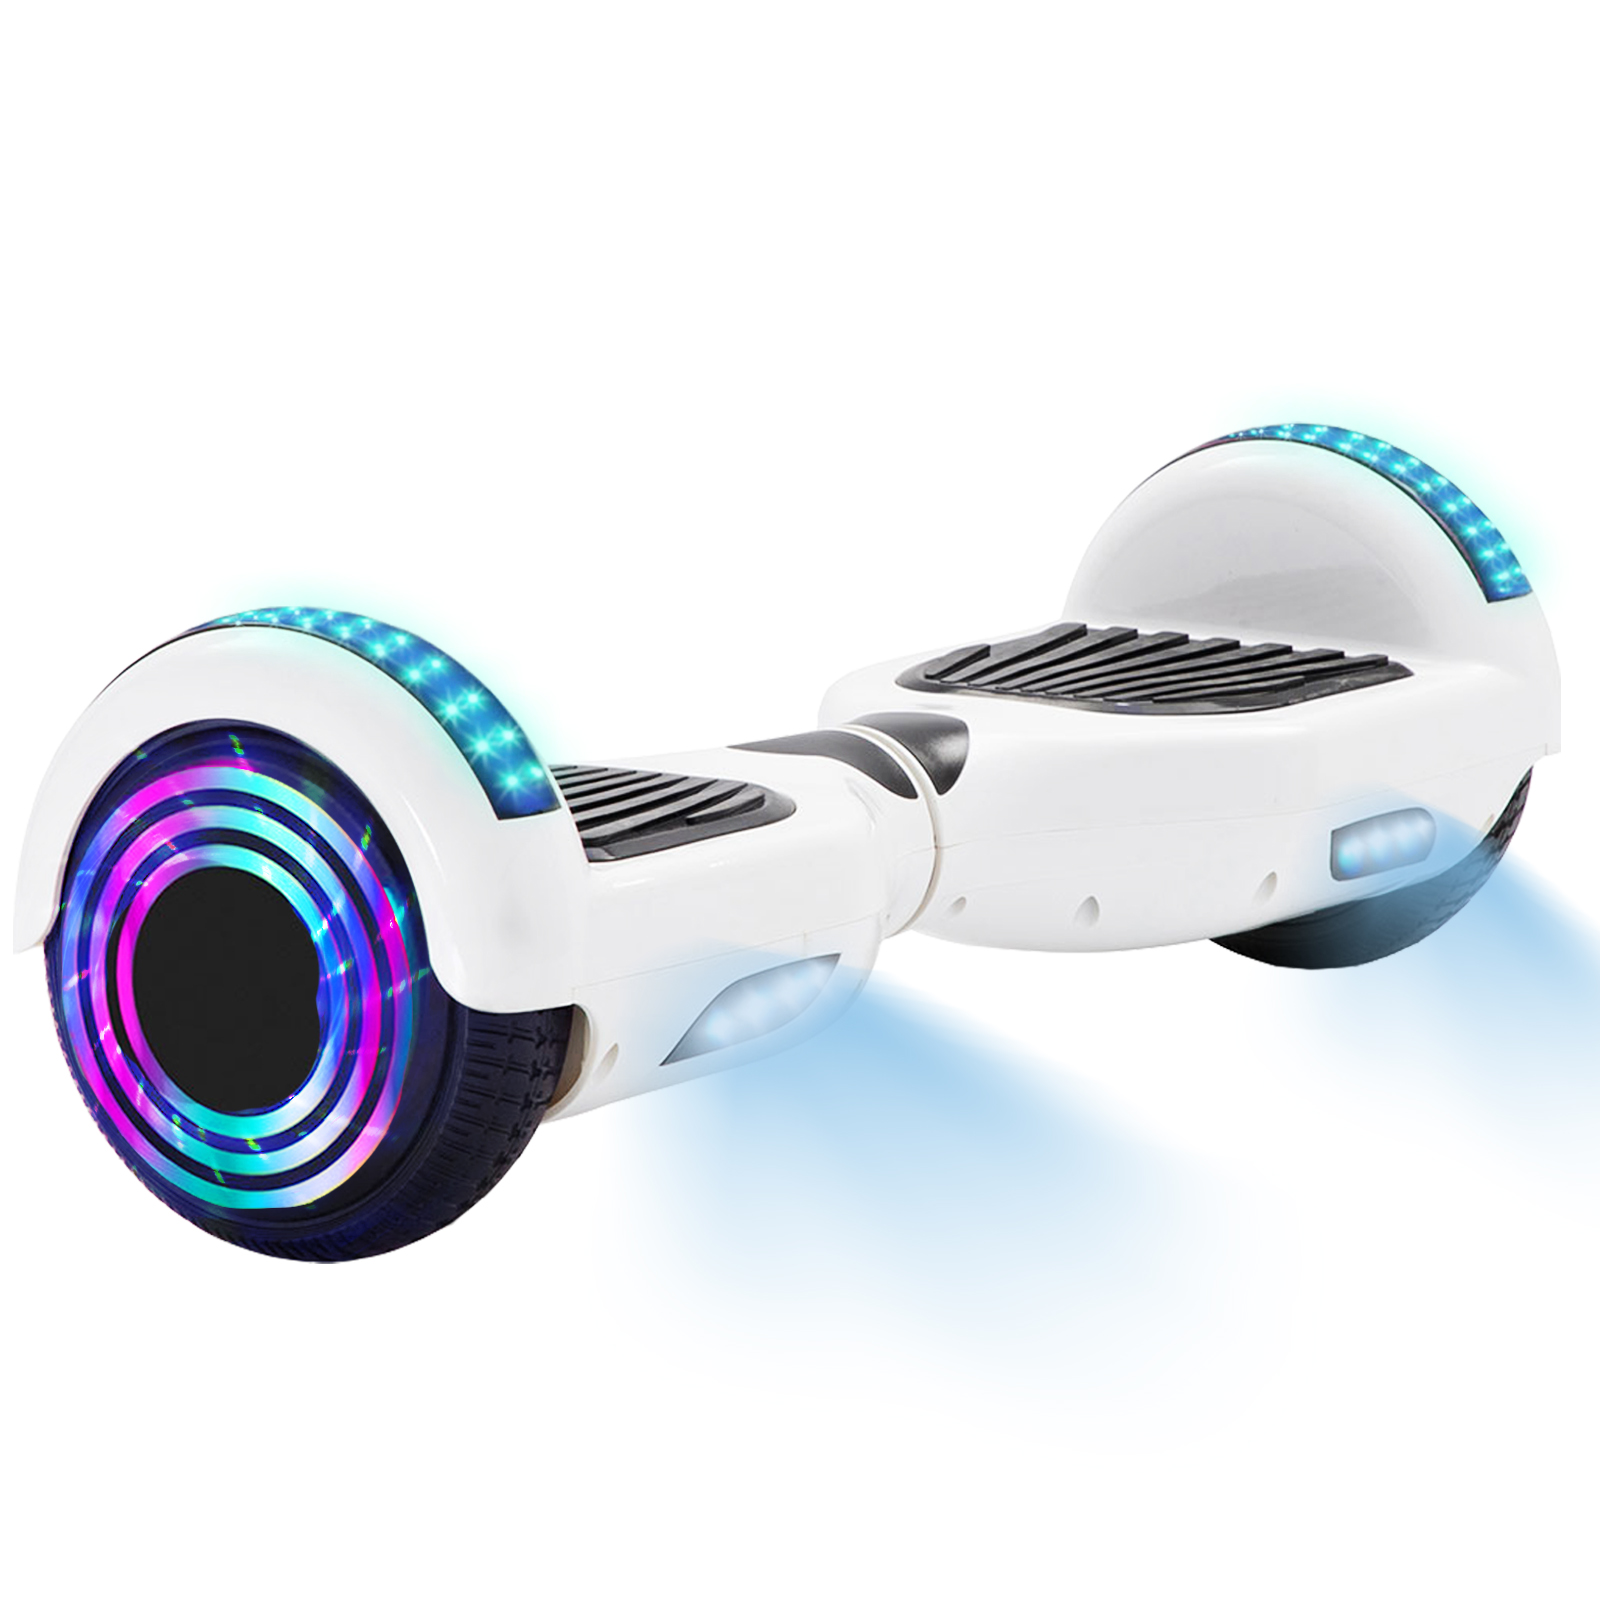 16 Farben Neue 6,5" Hoverboards für Kinder, mit Bluetooth Musik Lautsprecher und Disco LED Licht - 500W 12km/h